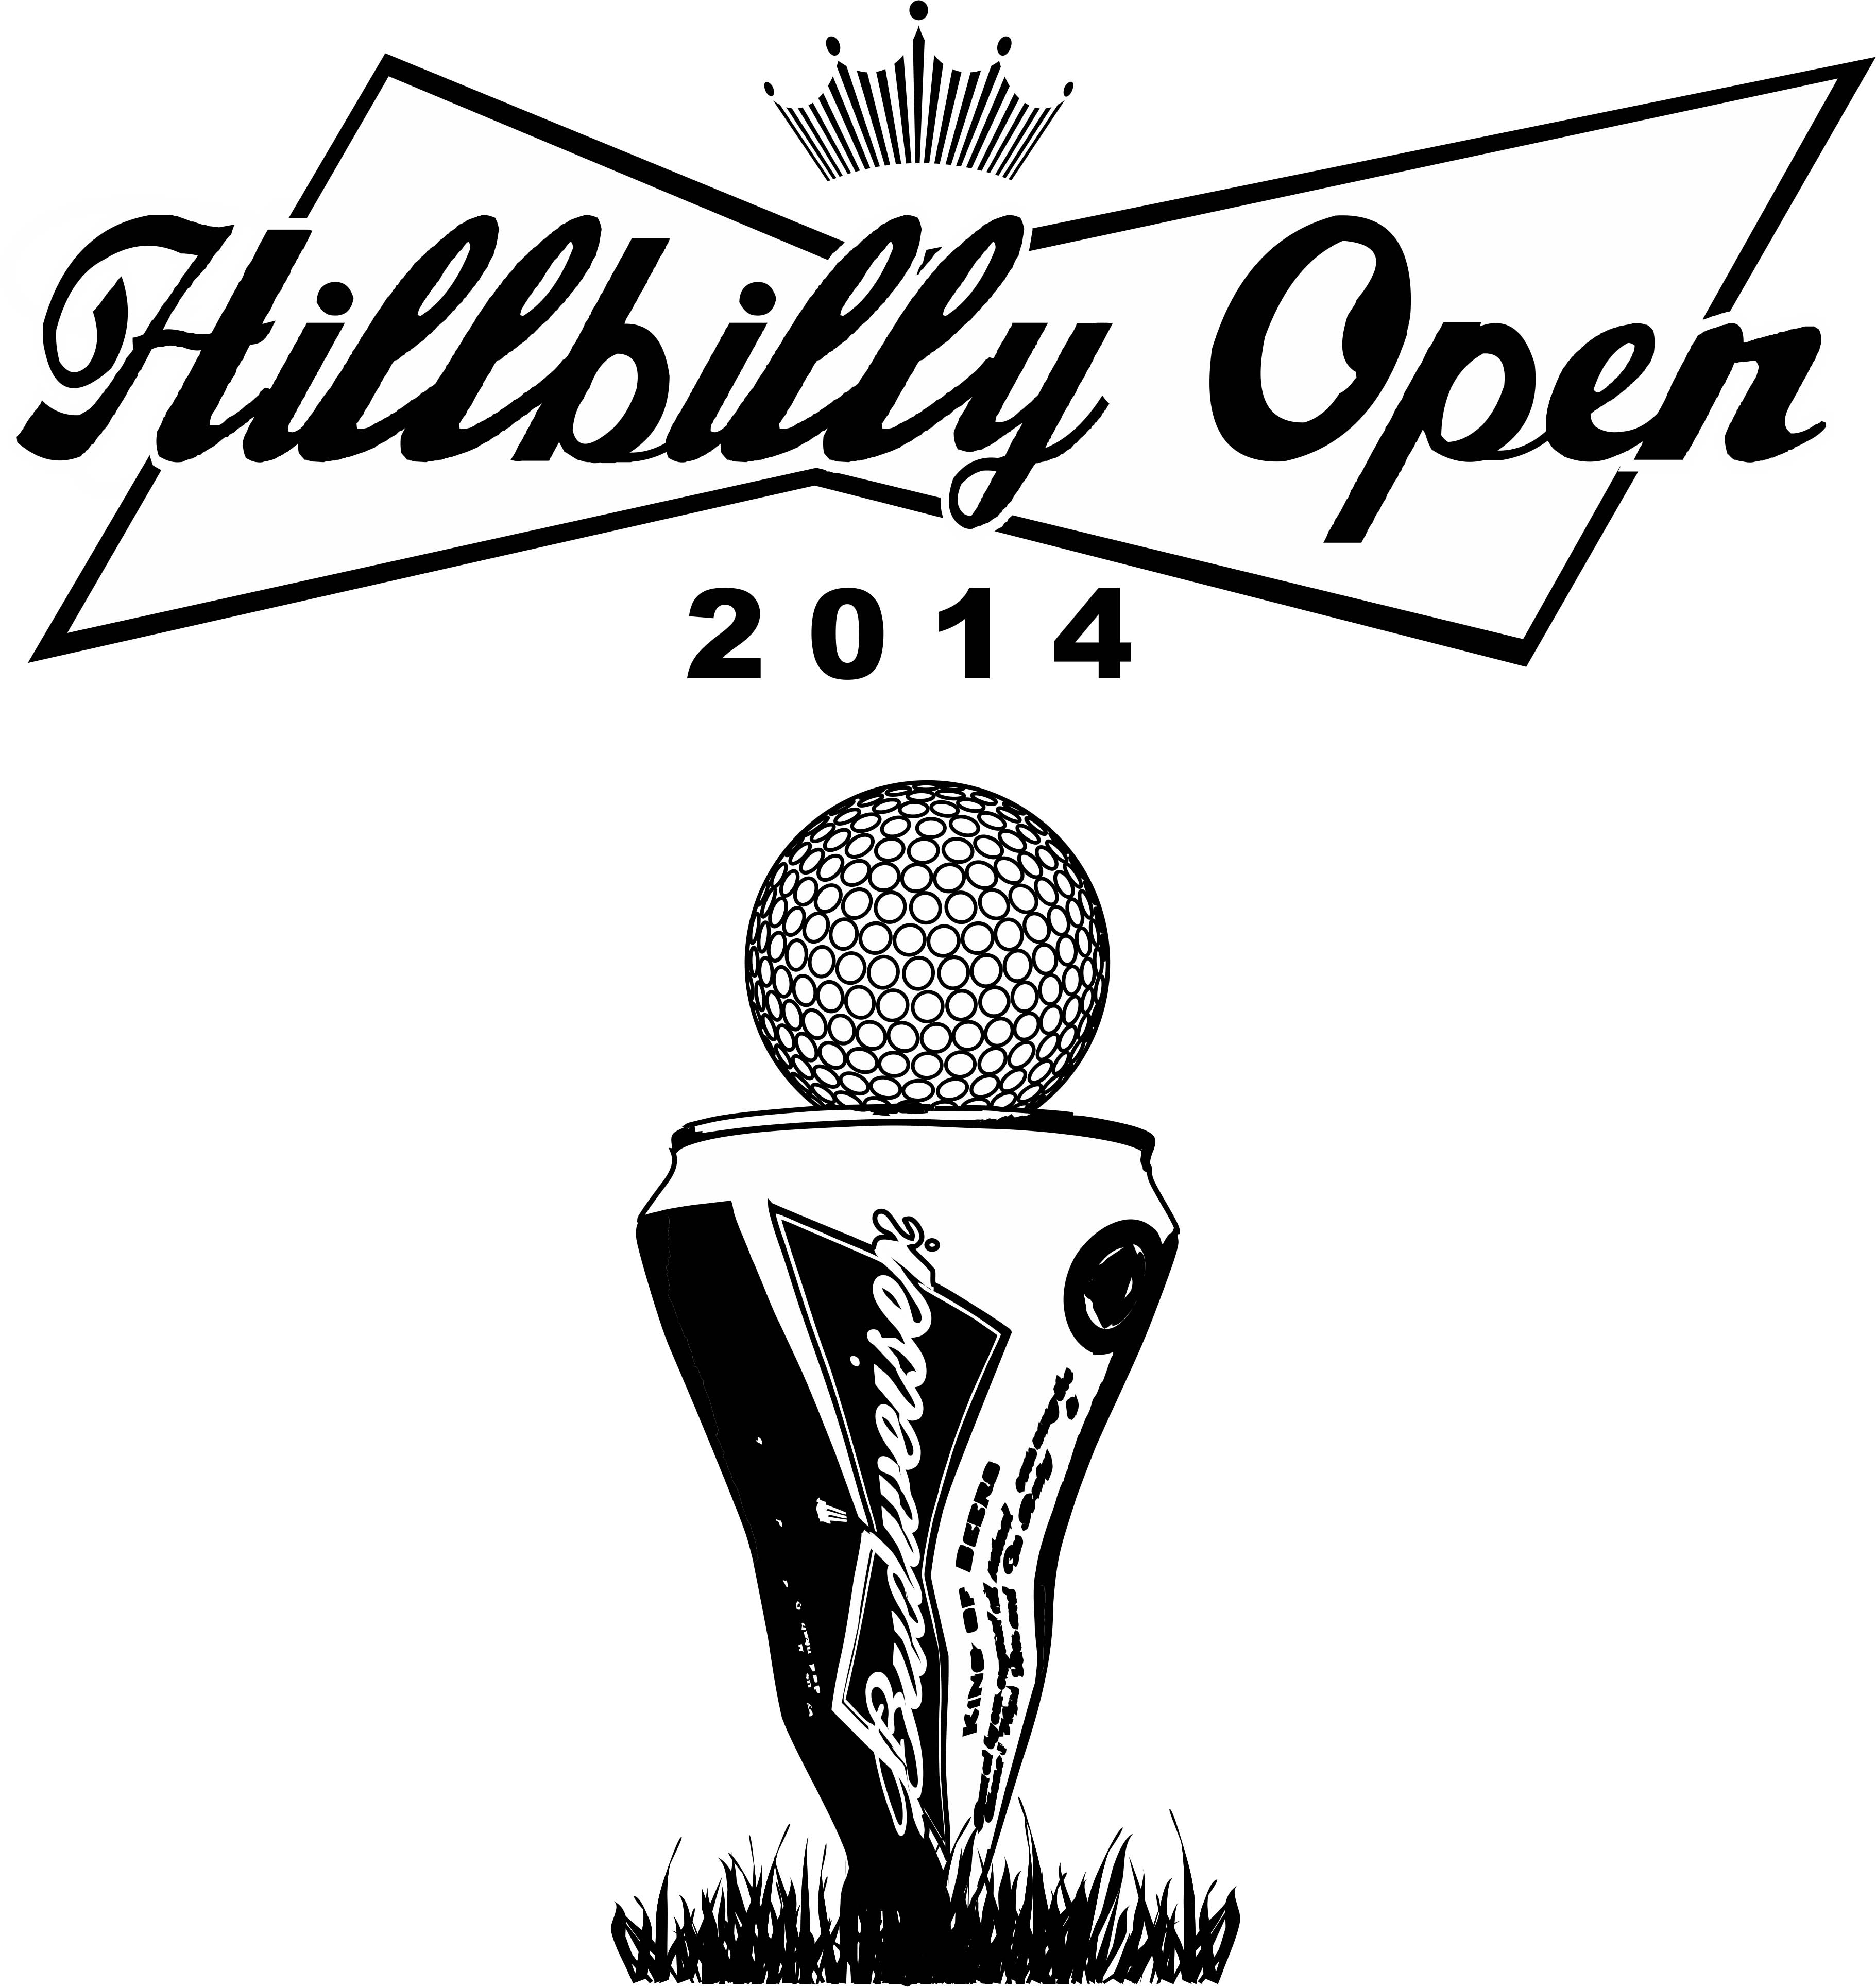 Hillbilly Open